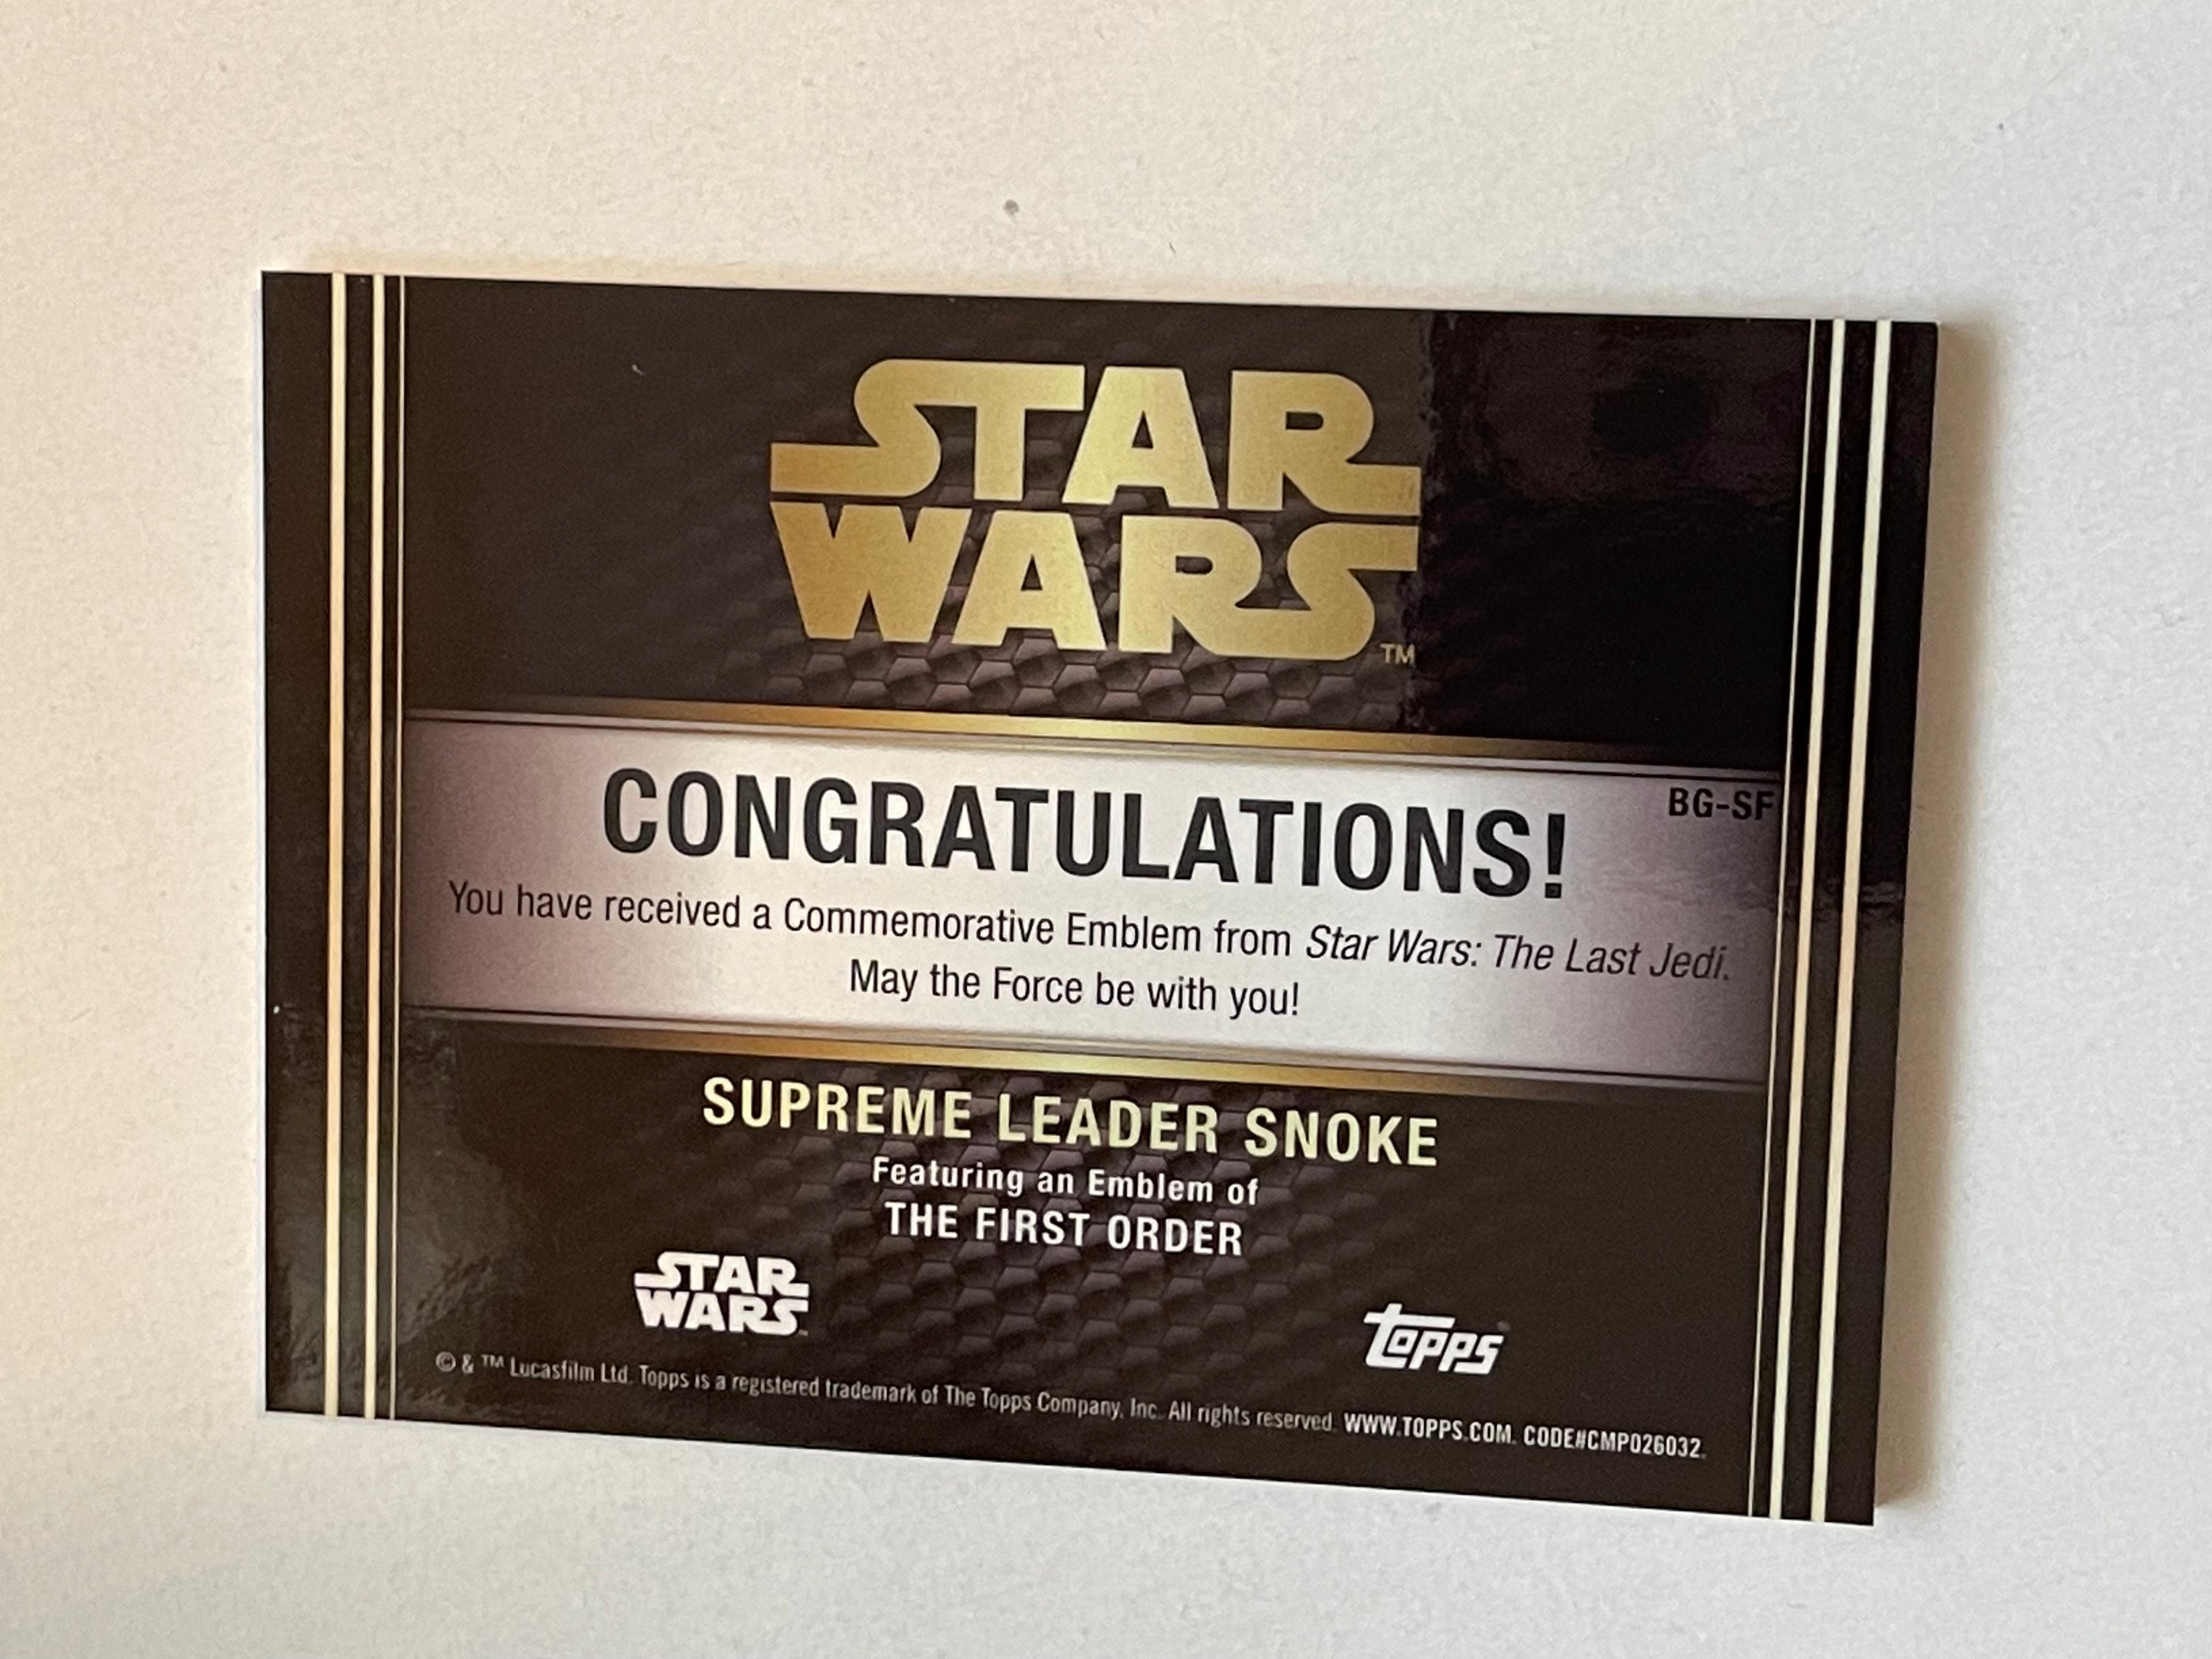 Star Wars Supreme Leader Snoke memorabilia insert card